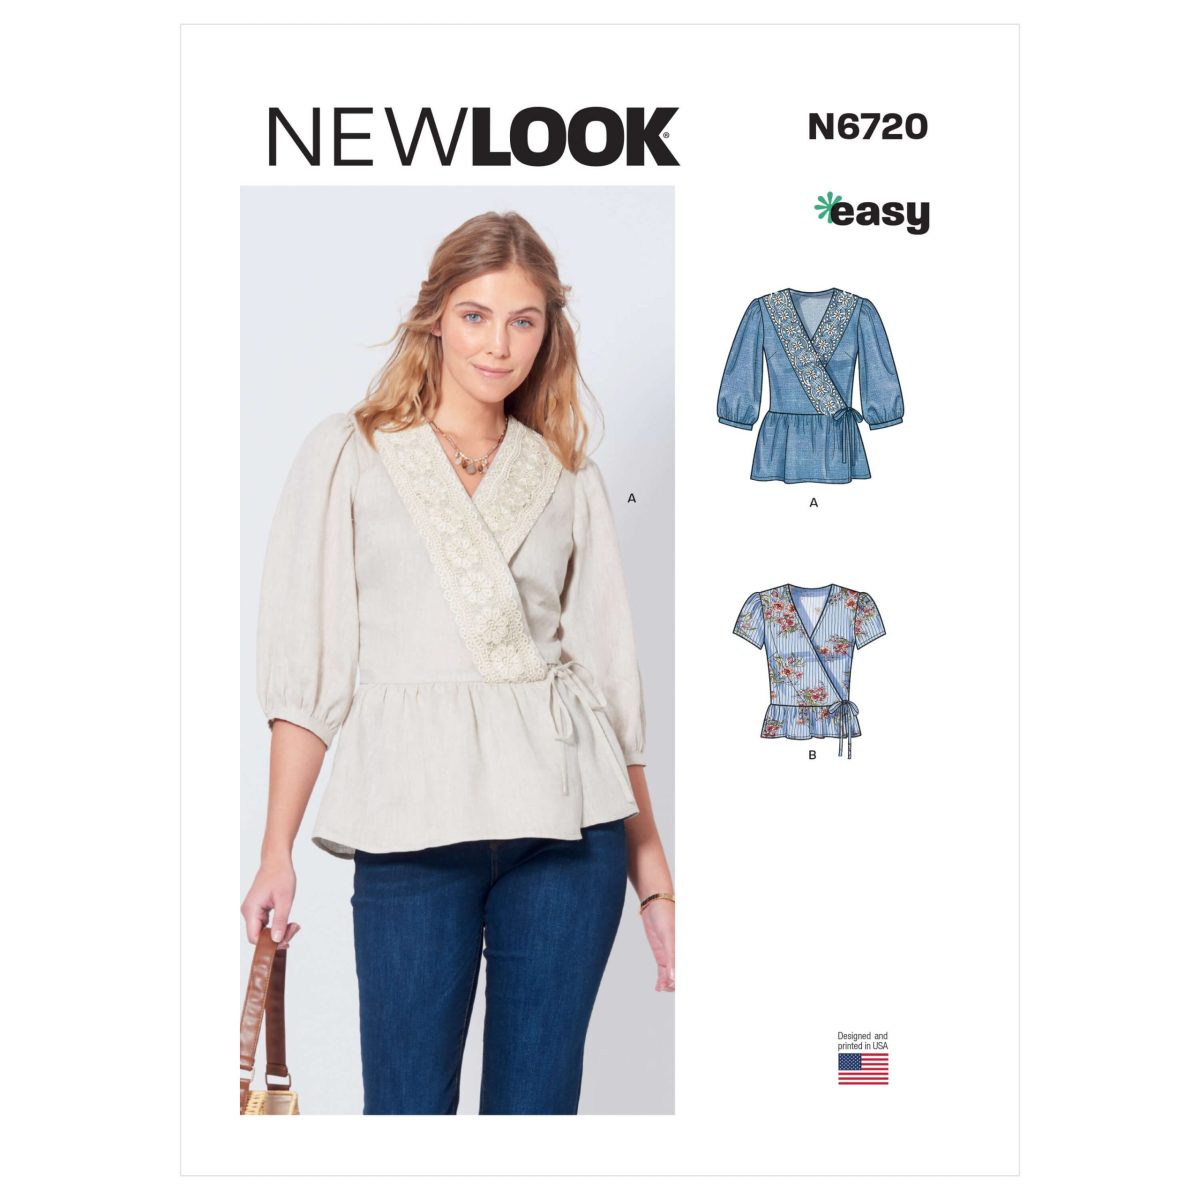 New Look Sewing Pattern N6720 Misses' Tops